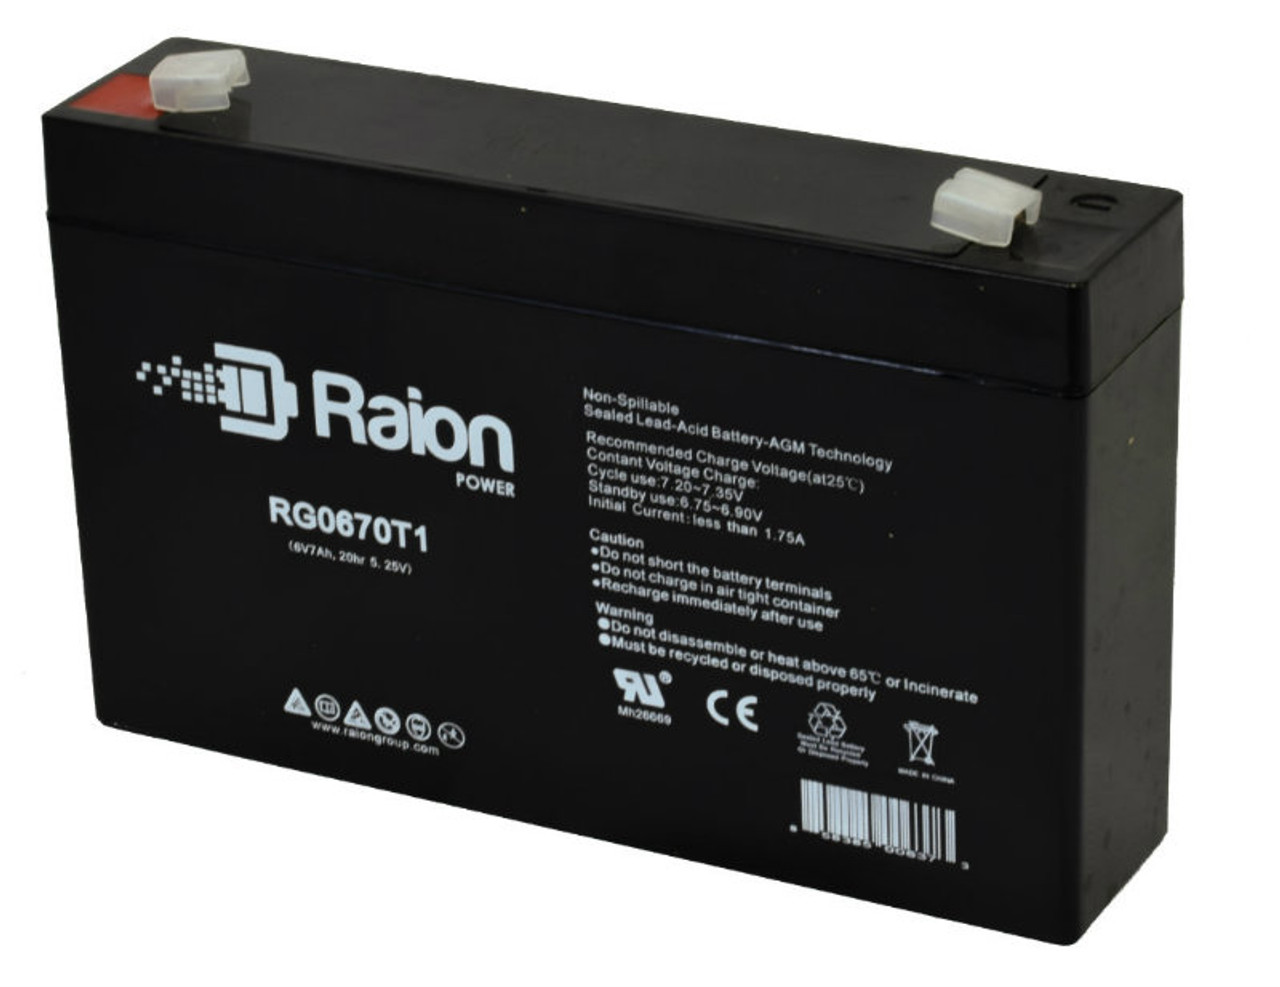 Raion Power RG0670T1 6V 7Ah Replacement Battery Cartridge for KRAFT VRLA 6V7